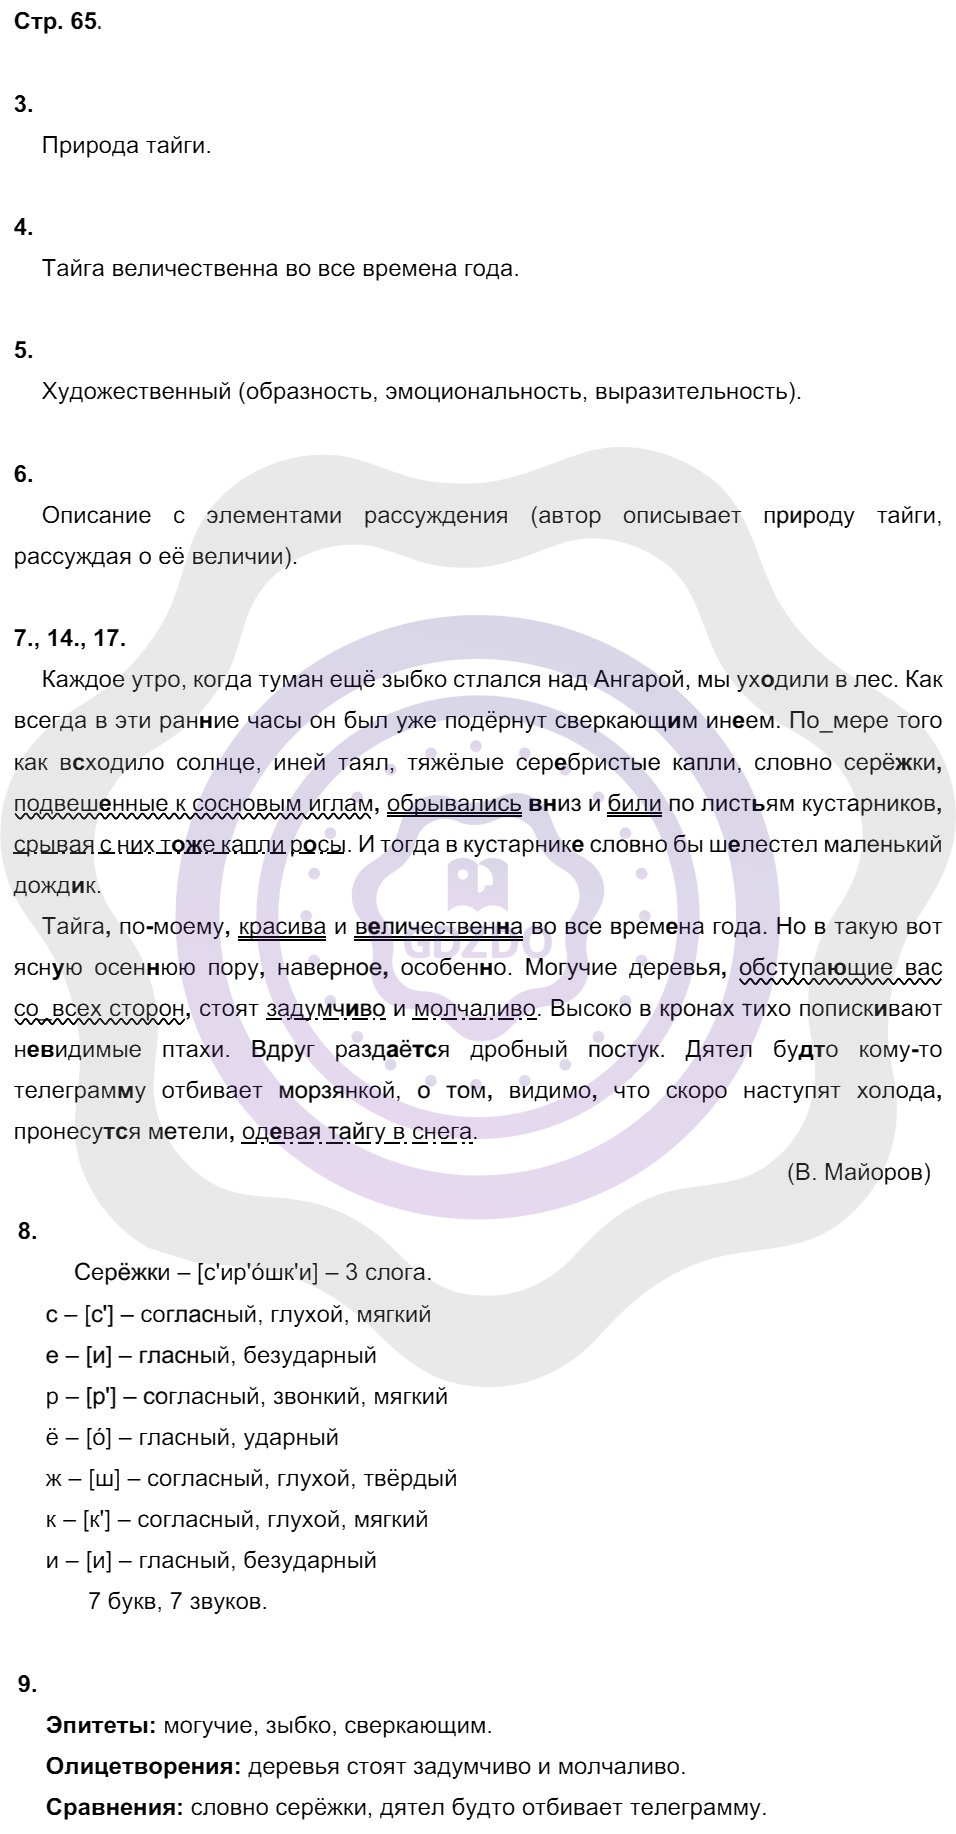 Ответы Русский язык 8 класс Малюшкин А. Б. Страницы 65